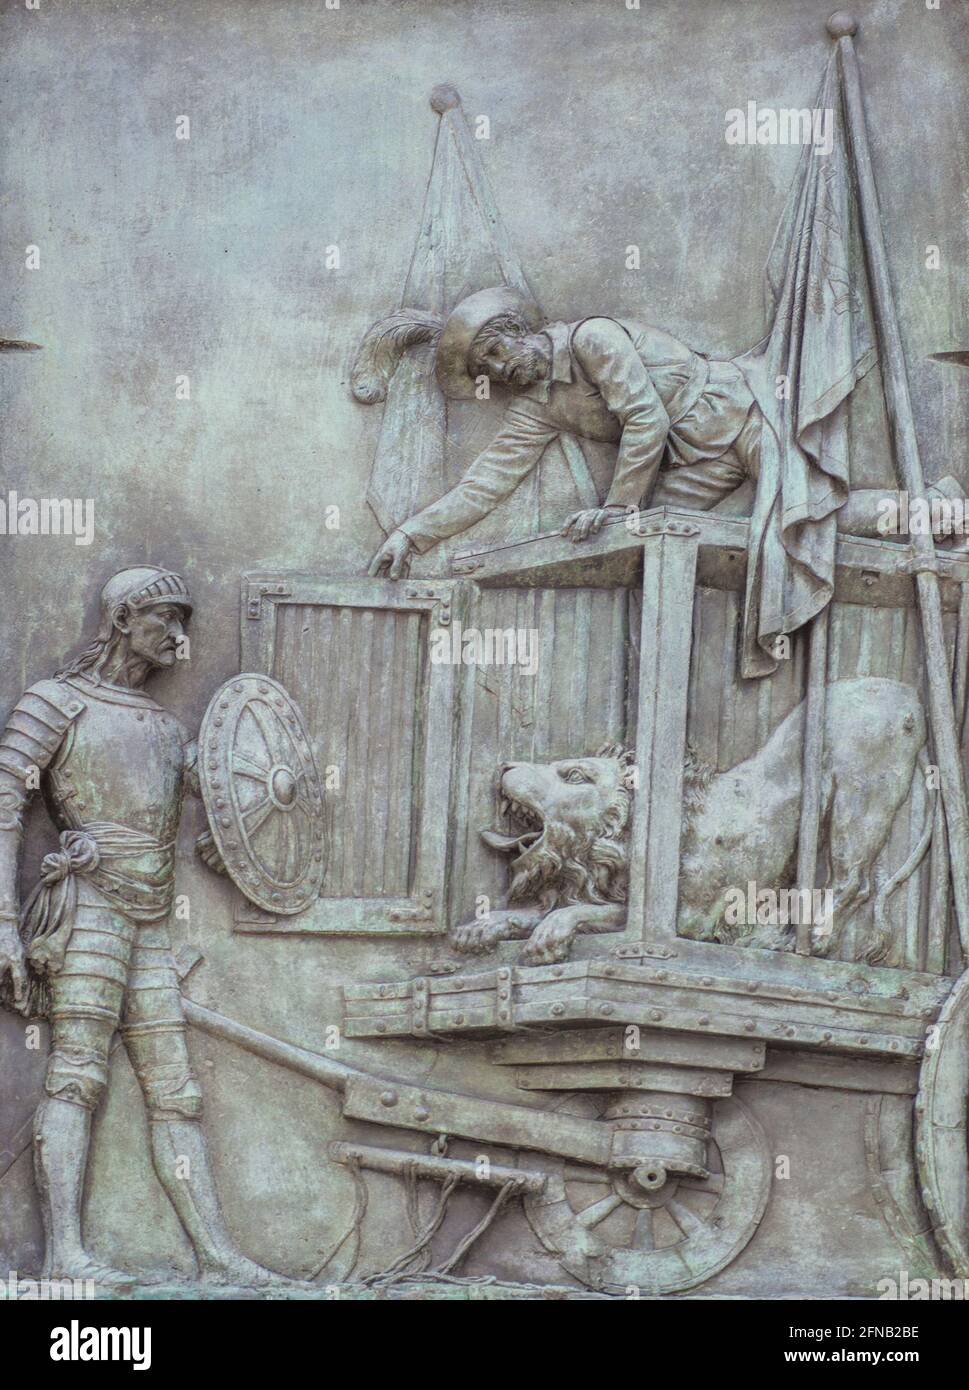 Espagne, Madrid - 6 mars 2021 : relief en bronze avec la scène Don Quichotte. Par Jose Piquer Duart, 1835. Aventure des lions. Miguel de Cervantes monumen Banque D'Images